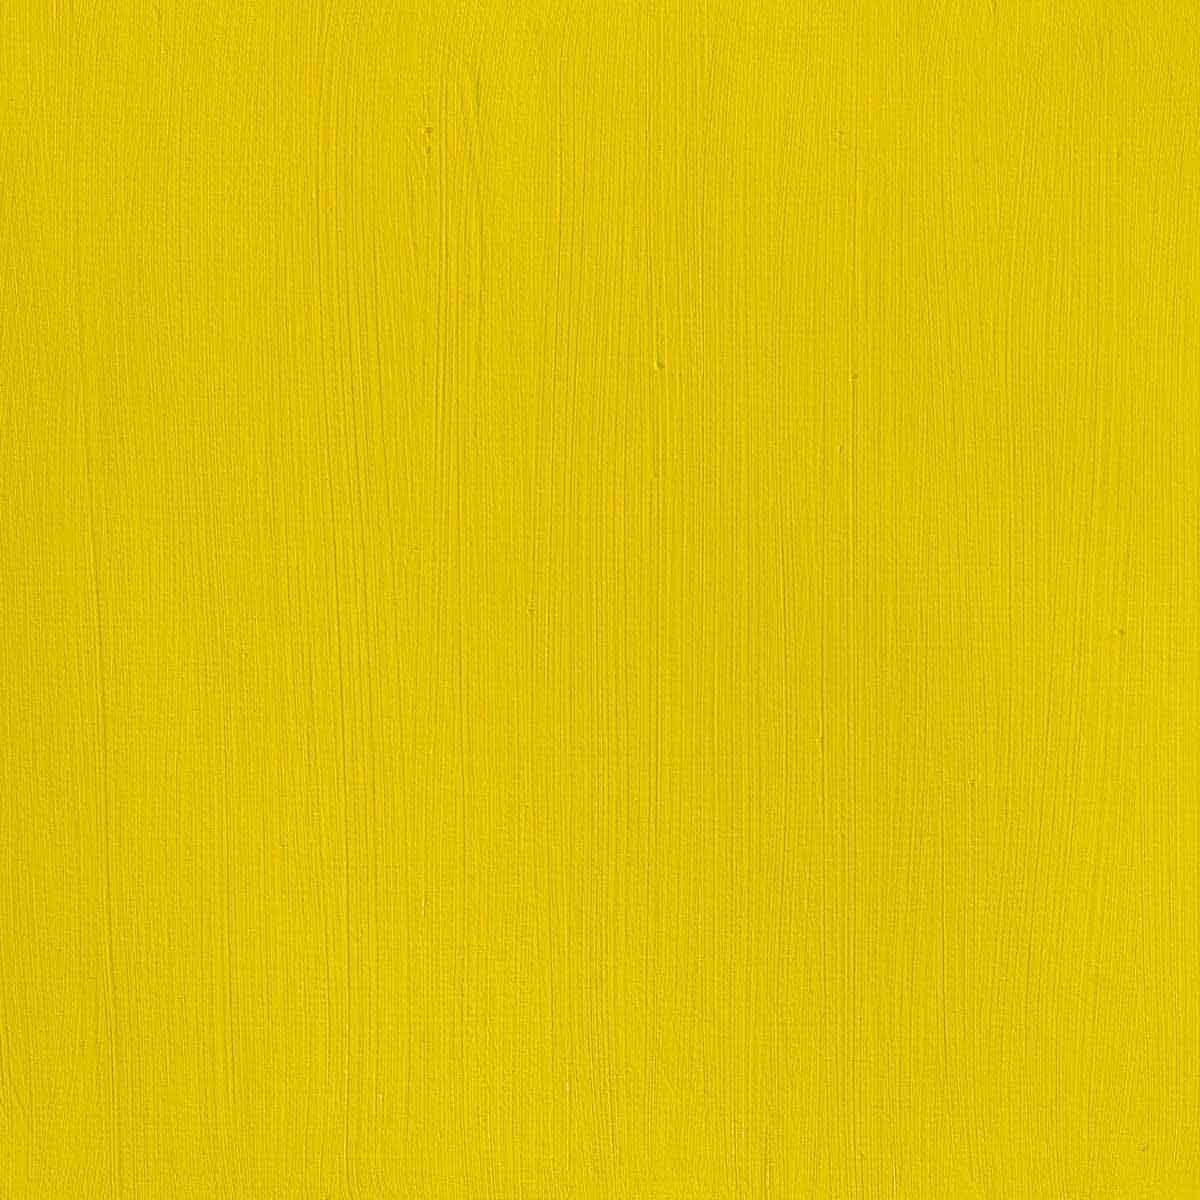 Winsor et Newton - Couleur acrylique des artistes professionnels - 60 ml - Lumière jaune cadmium